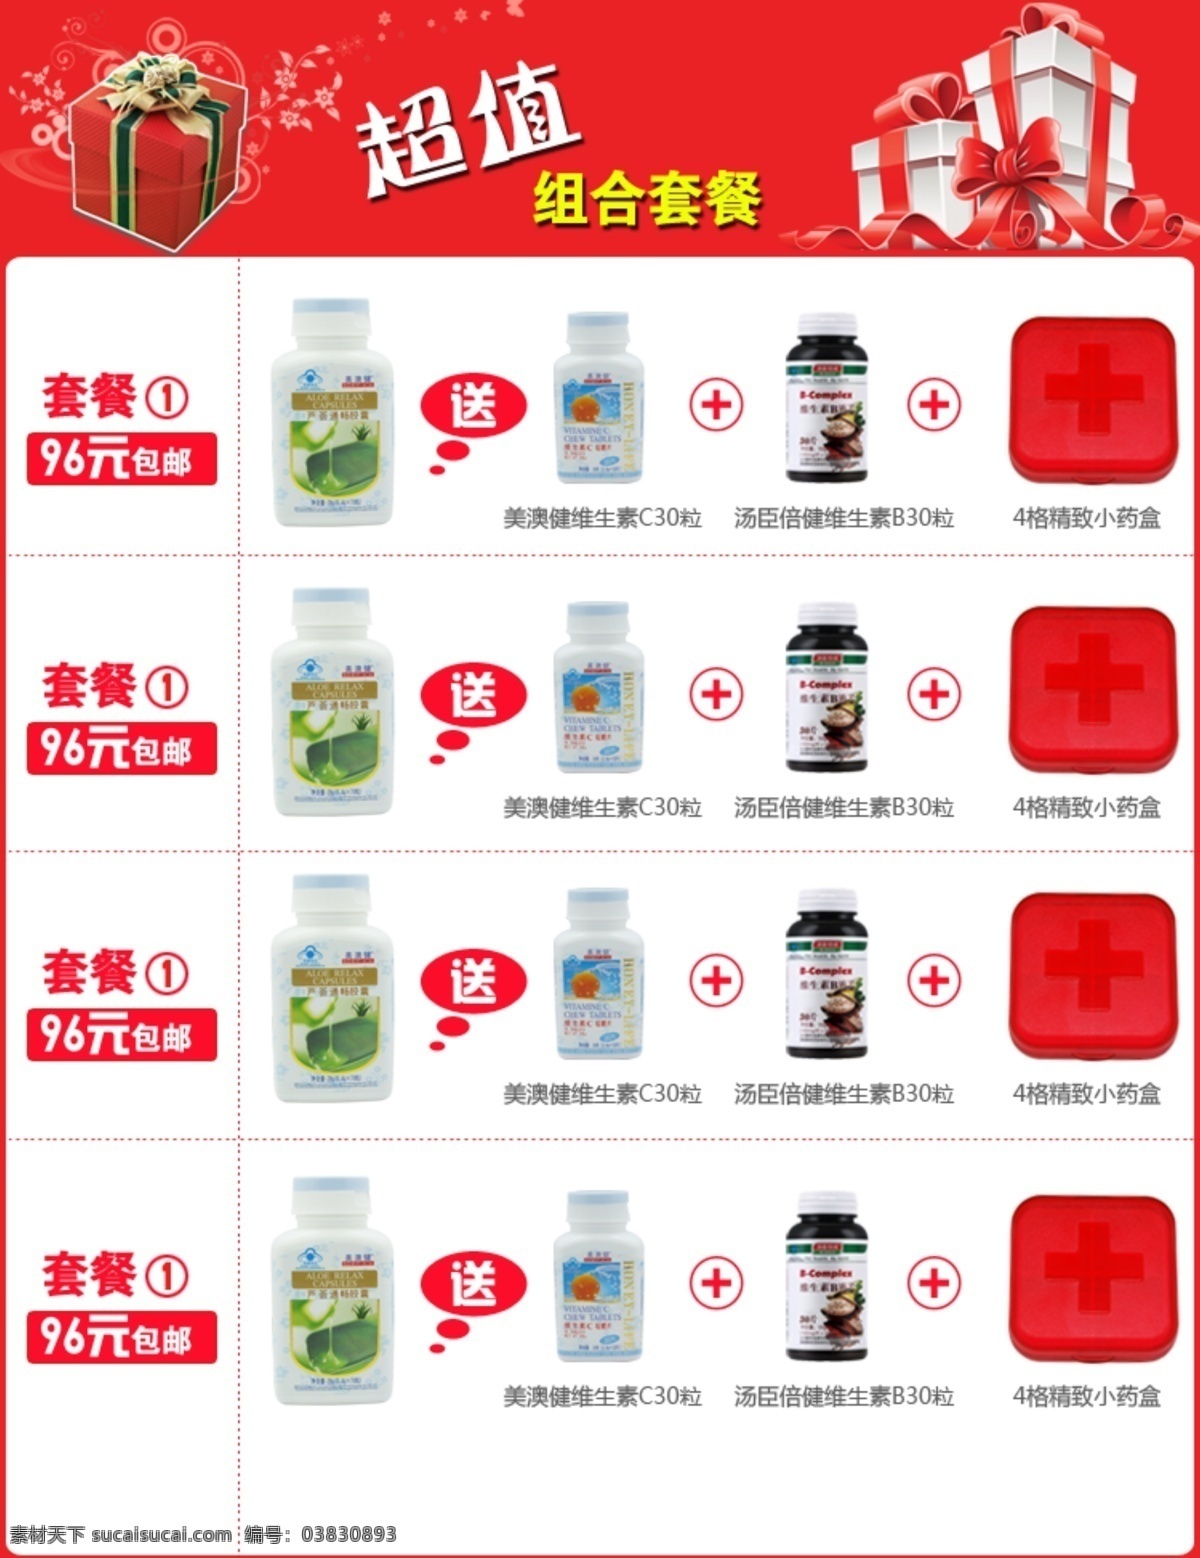 淘宝套装模版 淘宝 组合 促销 模版 保健品 宣传图 中文模版 网页模板 源文件